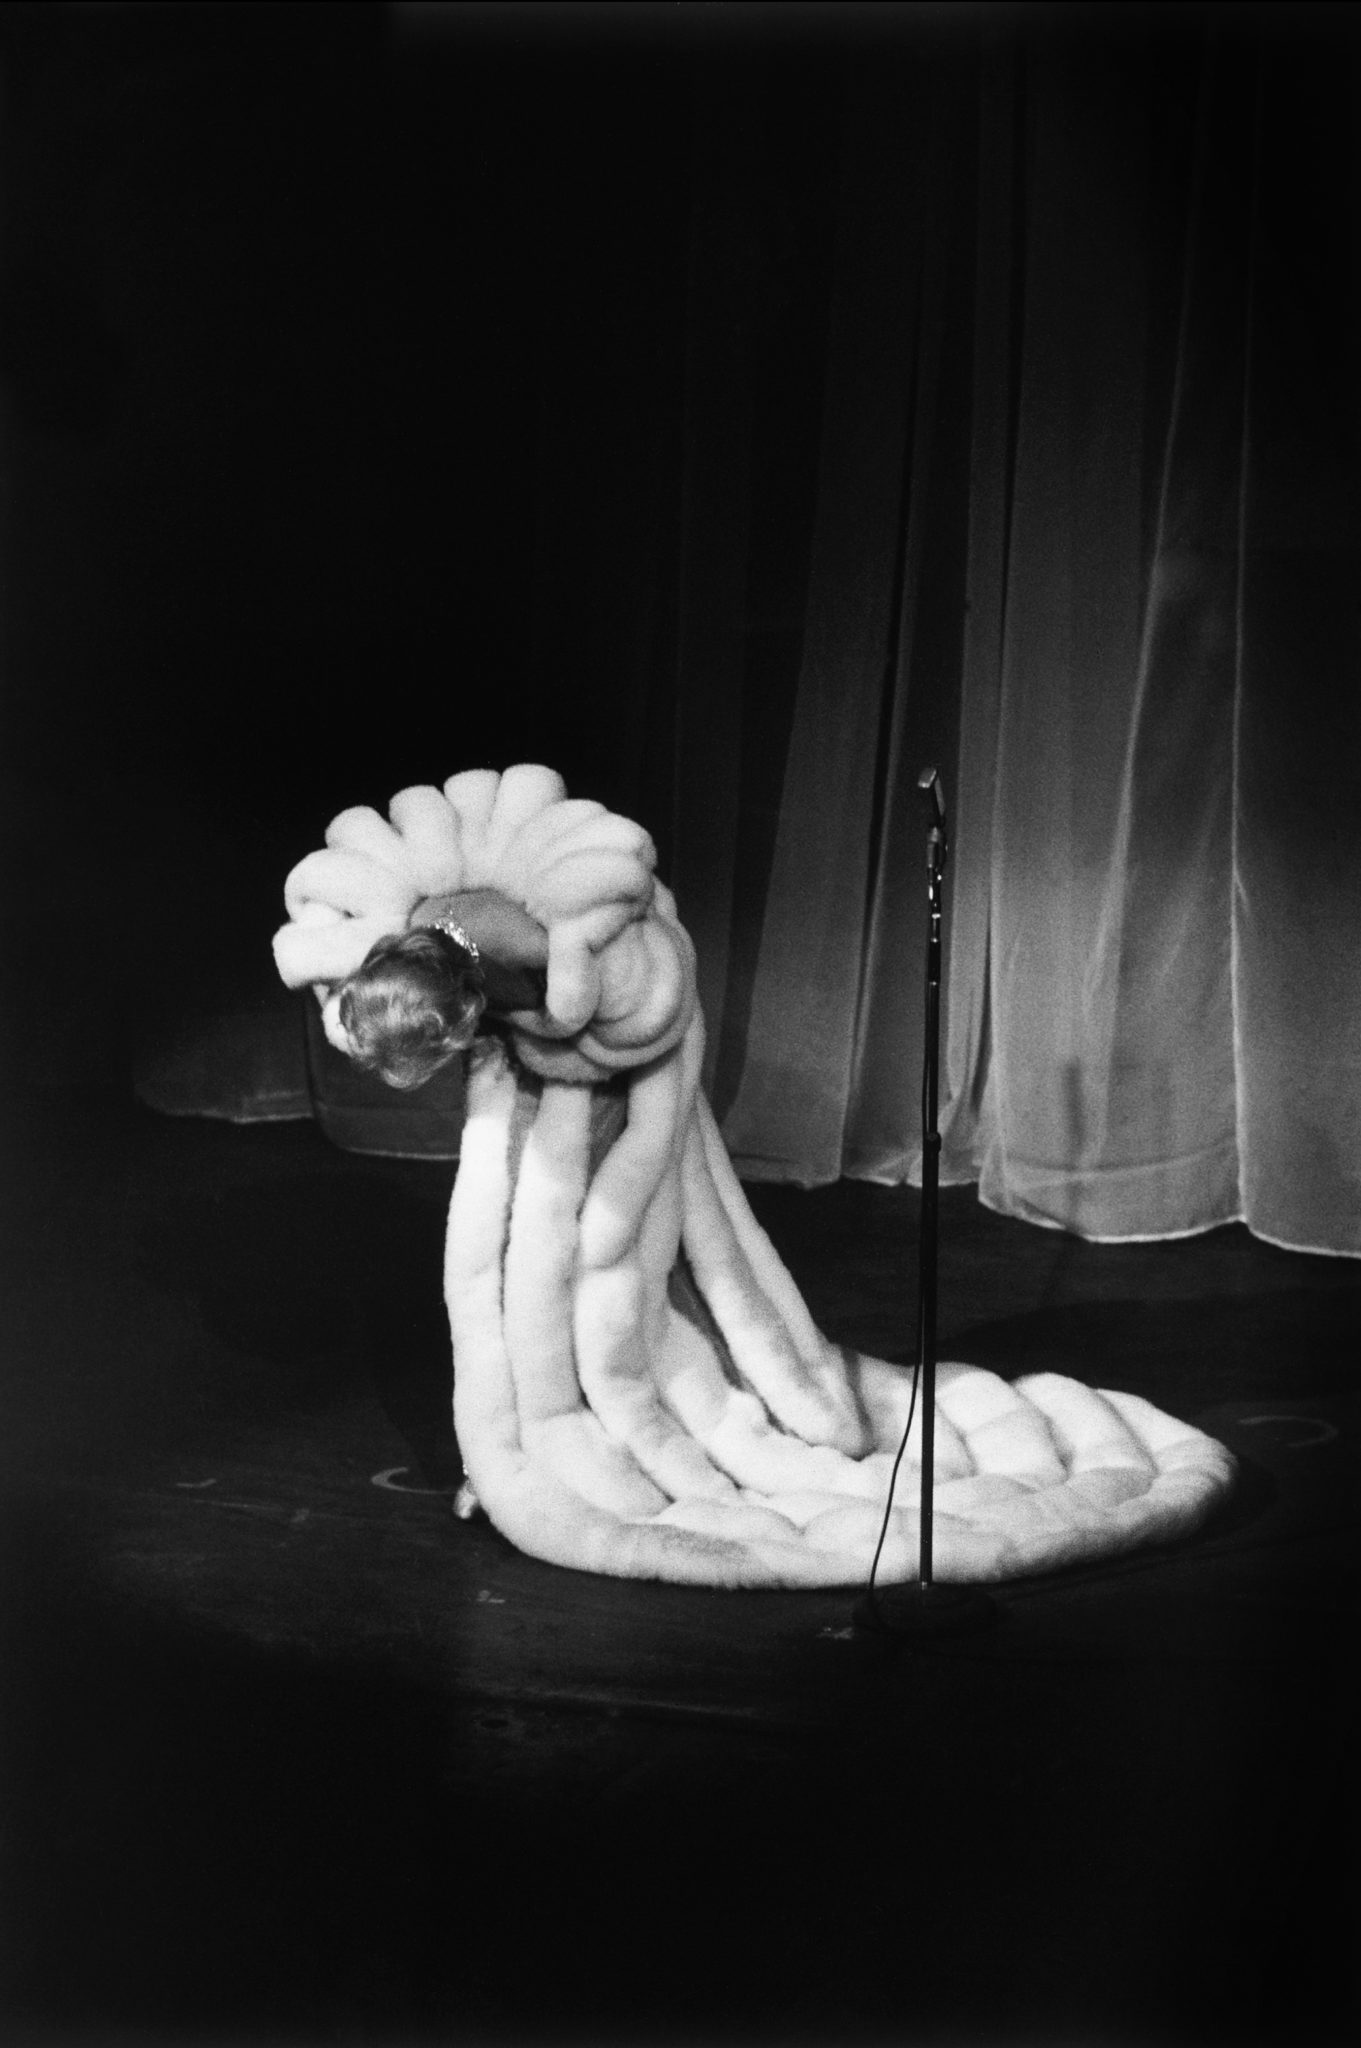 François Gragnon, Marlene Dietrich, Théâtre de l’Étoile, 1959 © François Gragnon / Paris Match / La Galerie de l’Instant